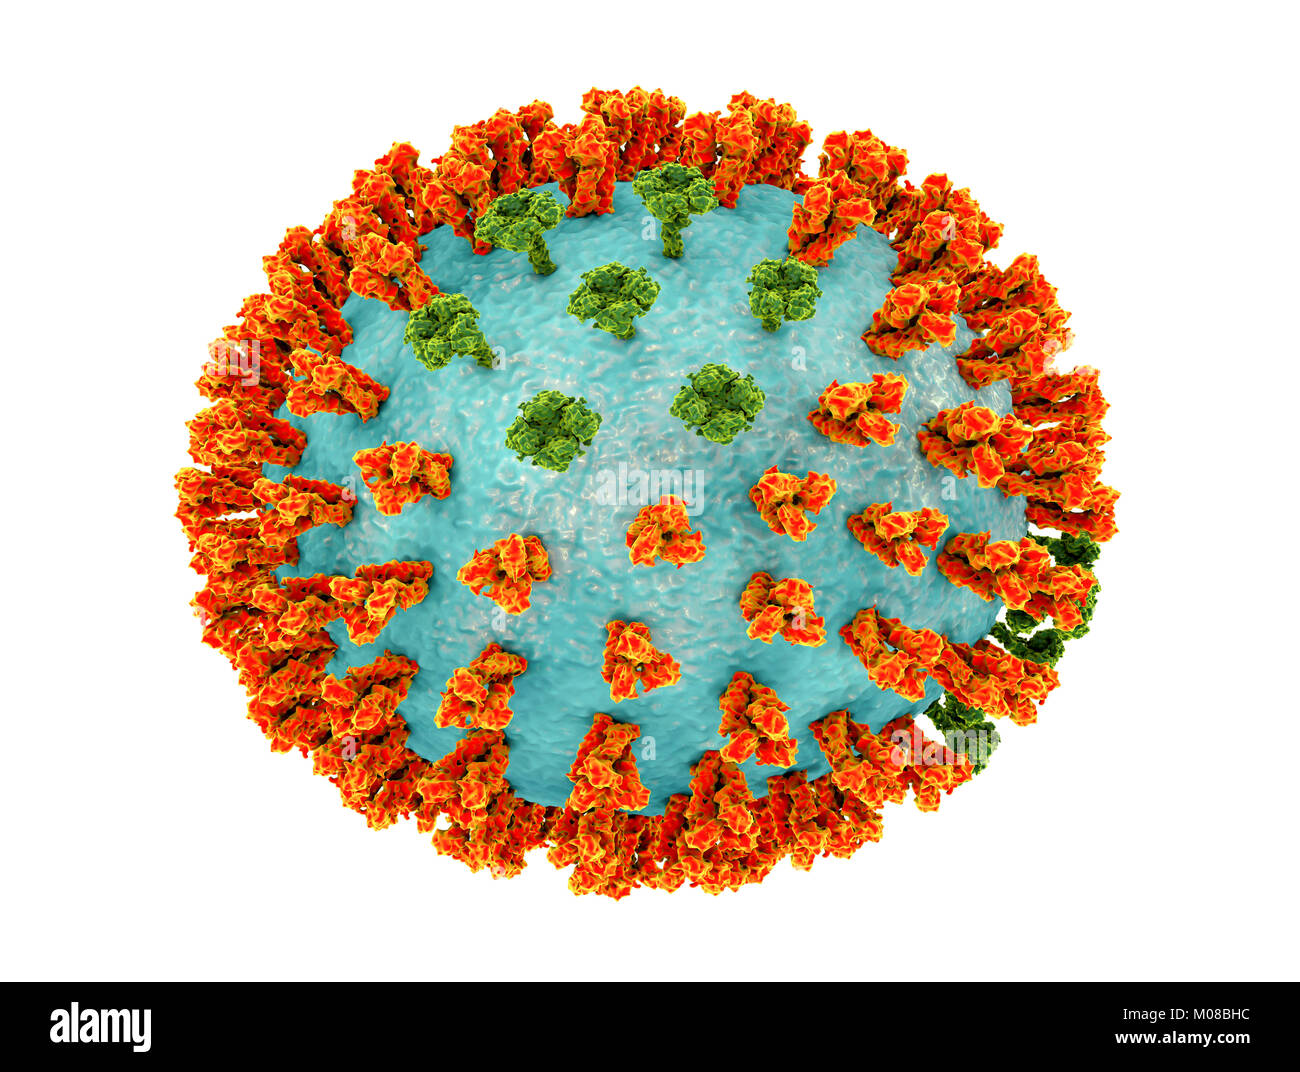 Virus influenzali di ceppo H3N2. 3D illustrazione che mostra la superficie dei picchi di glicoproteina emoagglutinina (arancione) e neuraminidasi (verde) su un influenza (flu) particella di virus. Con emoagglutinina svolge un ruolo in attacco del virus respiratorio umano cellule. Neuraminidasi gioca un ruolo nel rilascio di nuova formazione di particelle di virus da una cellula infettata. H3N2 virus sono in grado di infettare gli uccelli e i mammiferi così come gli esseri umani. Essi sono spesso causa di più gravi infezioni nei giovani e anziani rispetto ad altri ceppi influenzali e può portare ad aumenti di ricoveri e decessi. Foto Stock